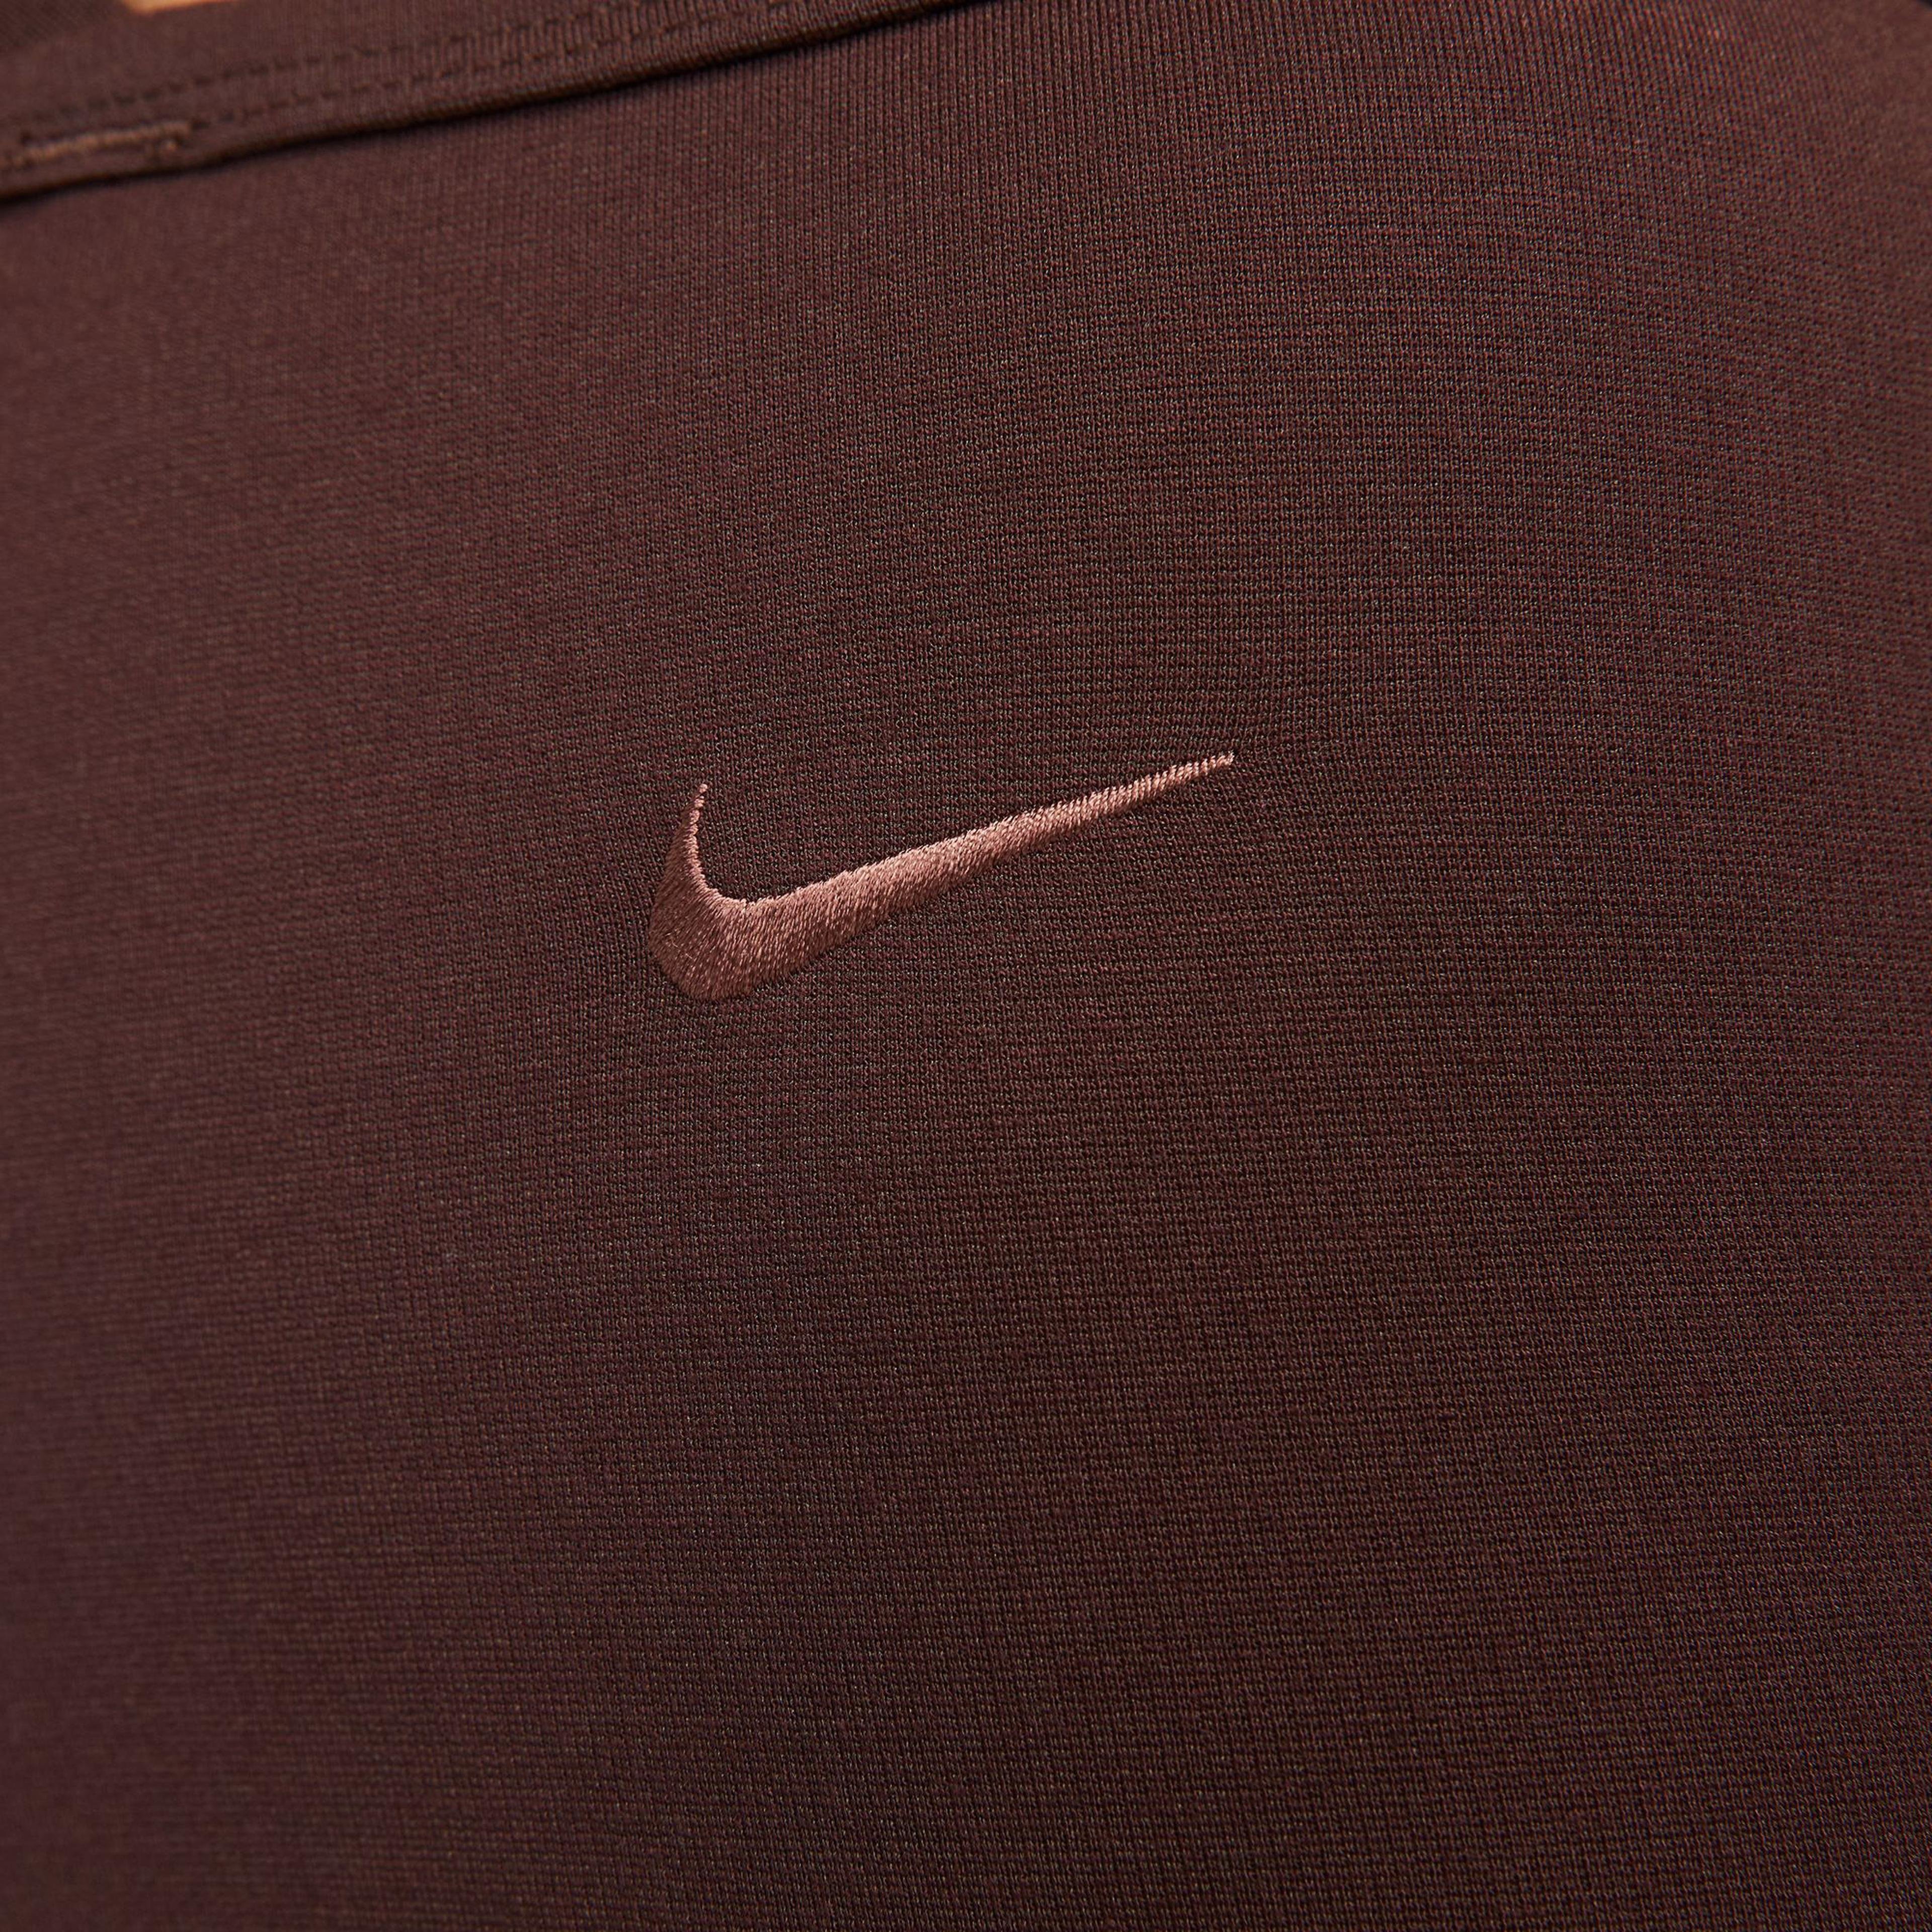 Nike Sportswear Everyday Modern Kadın Kahverengi Şort